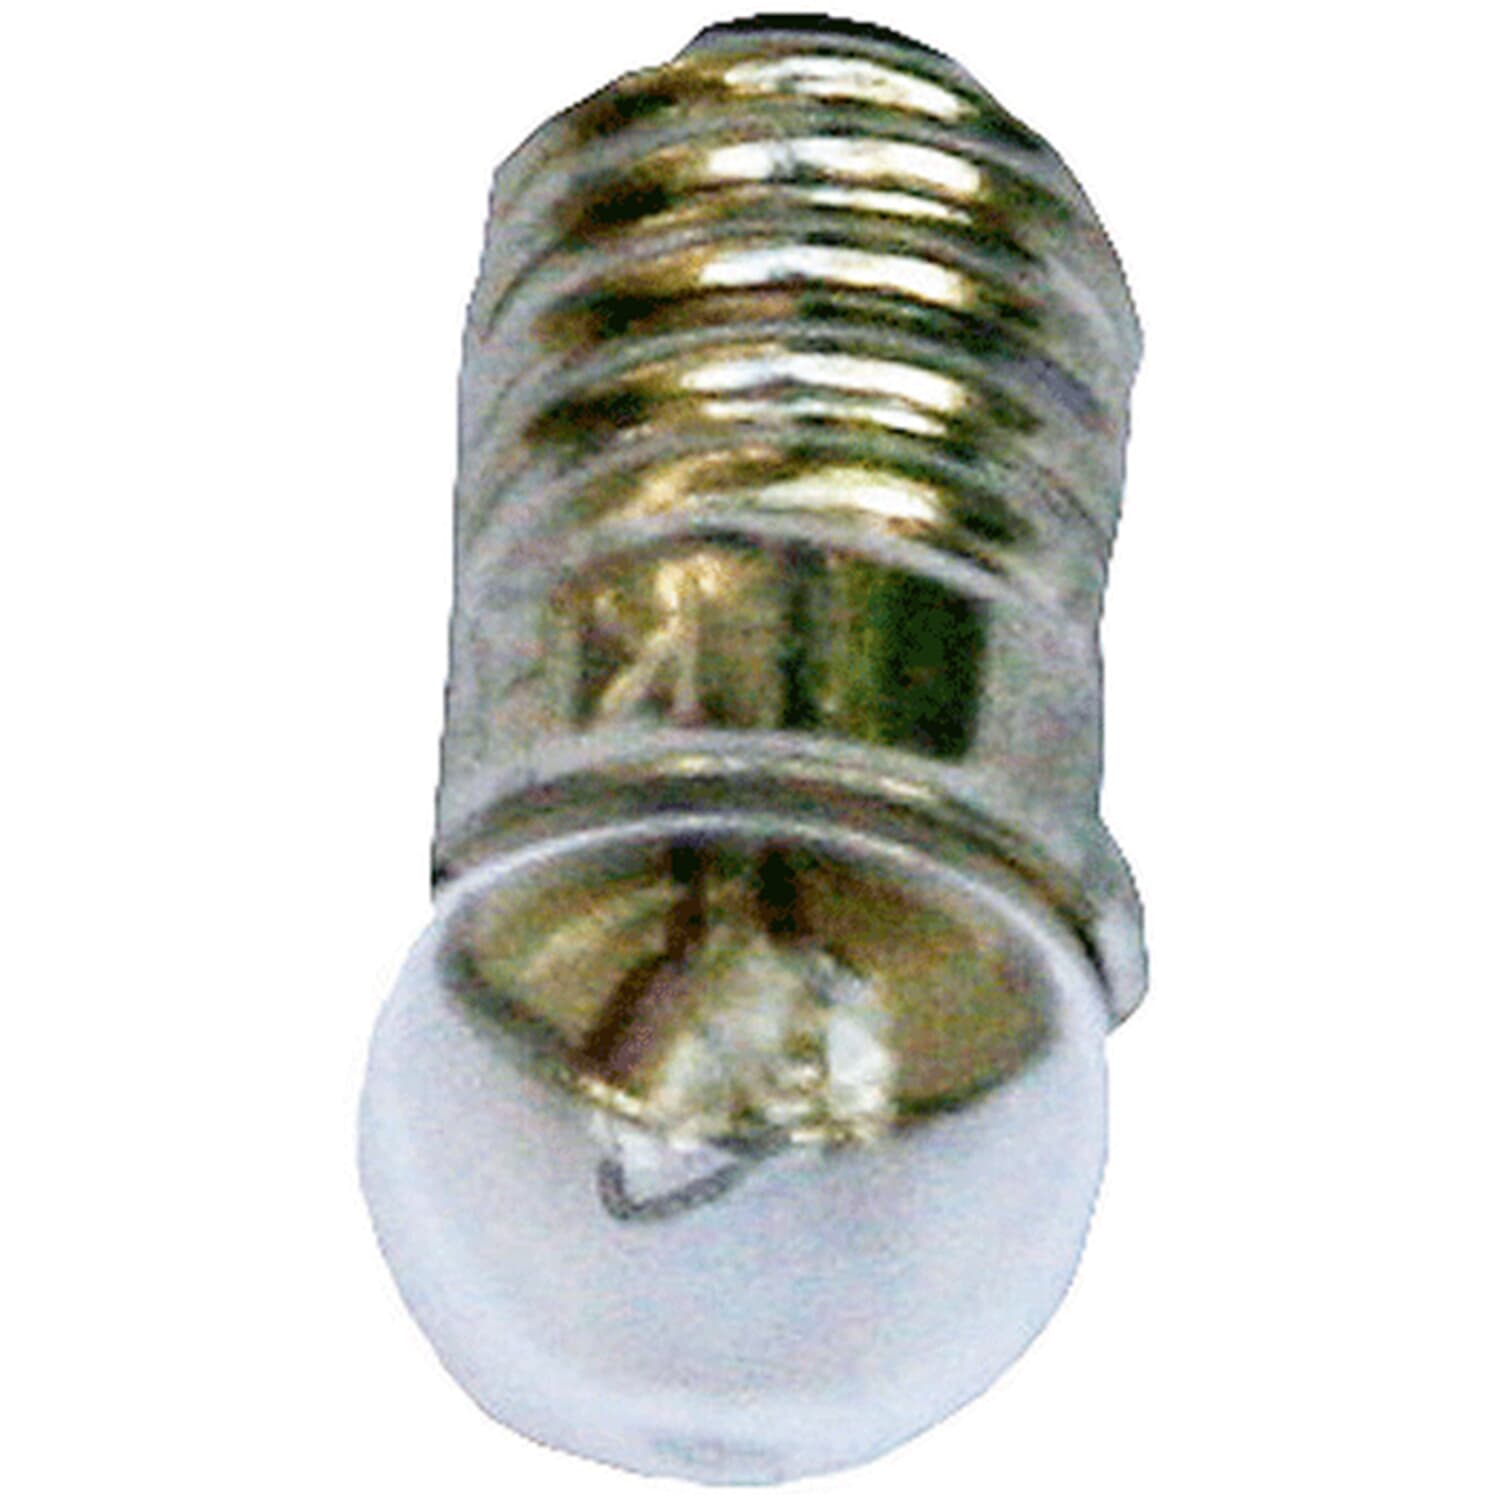 Light bulb, 3.5 V/ E5,5, Height 1/2 (12 mm)